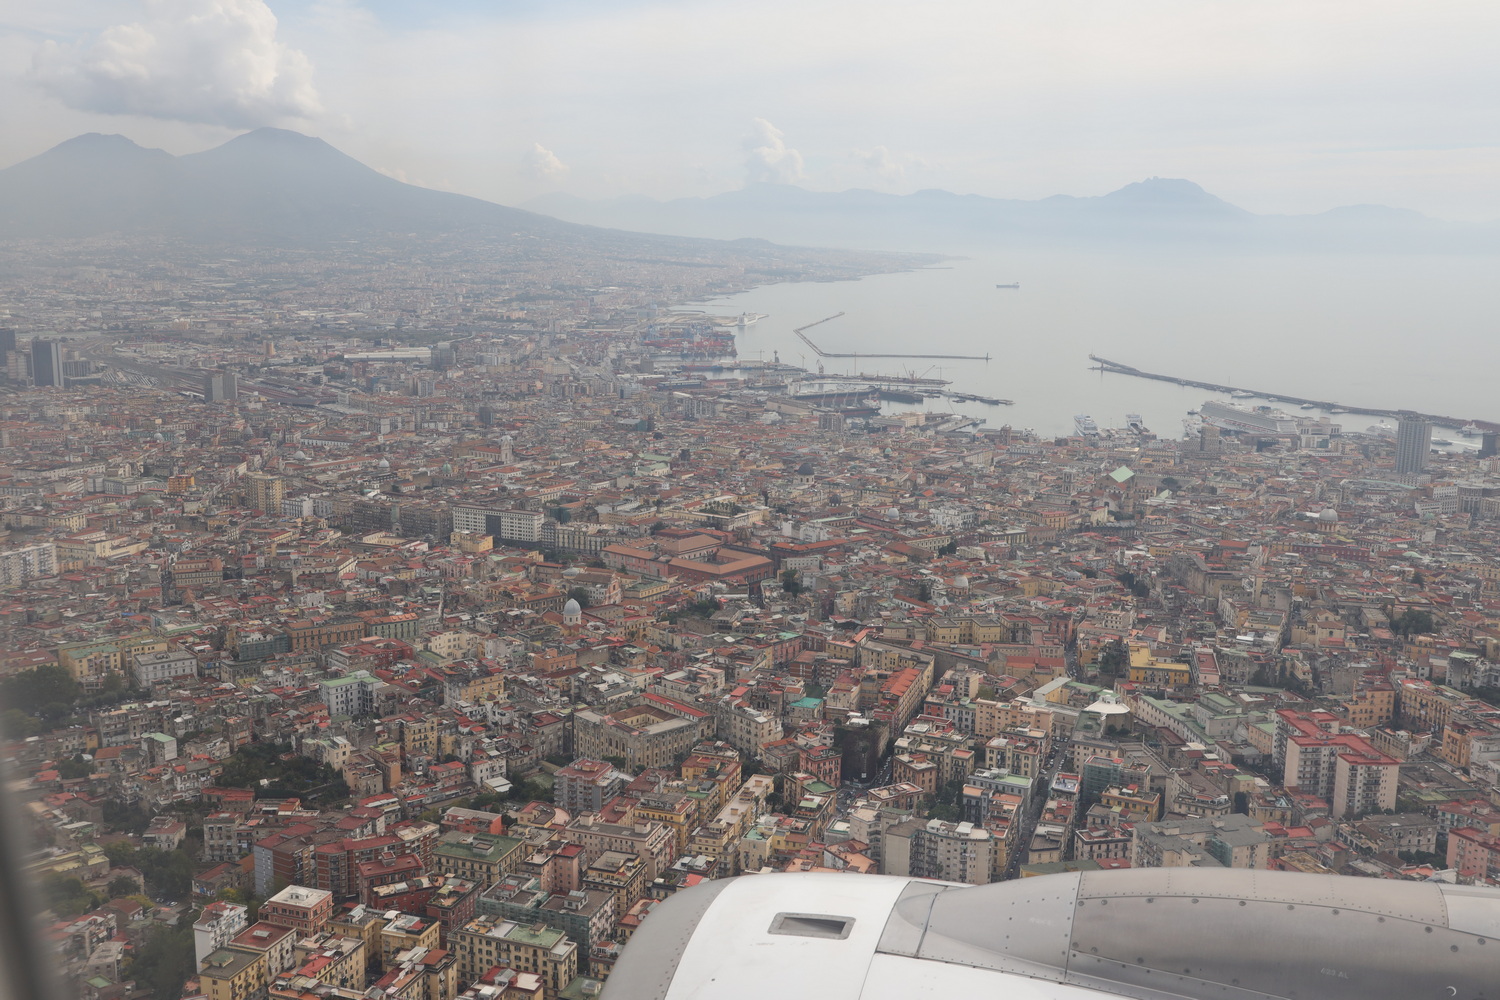 Napoli mit Vesuv und Hafen